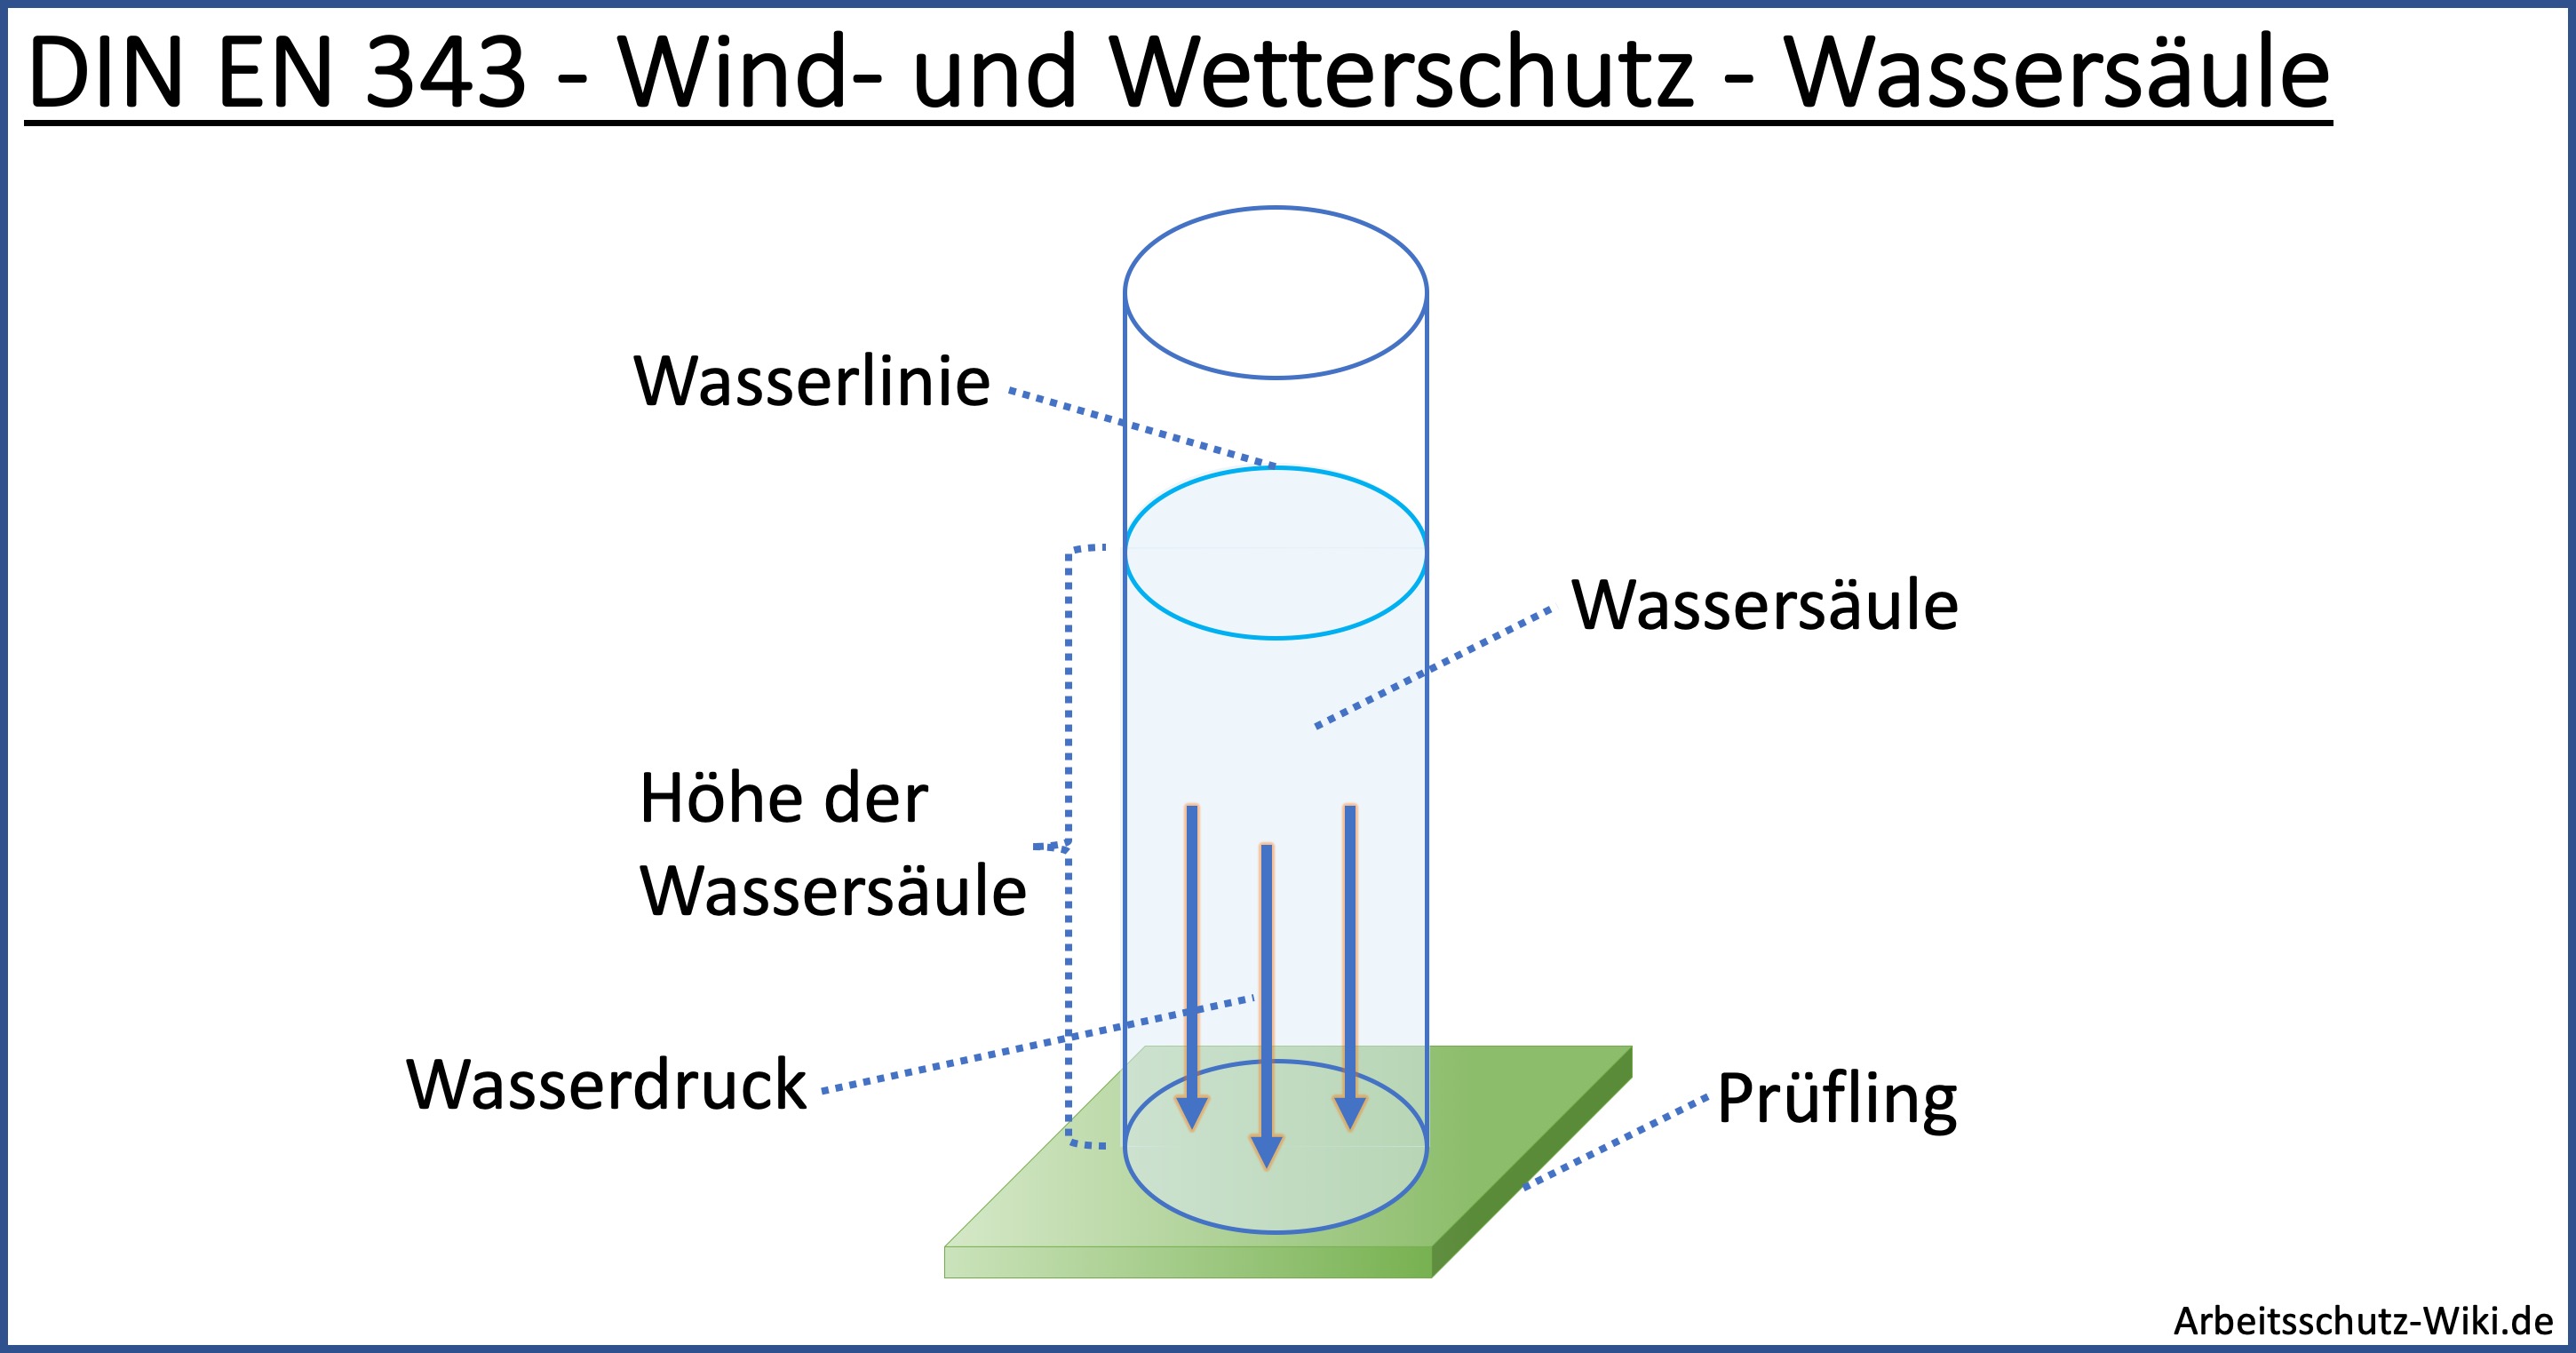 Datei:Wassersäule - DIN EN 343 - Wind und Wetterschutz.jpg